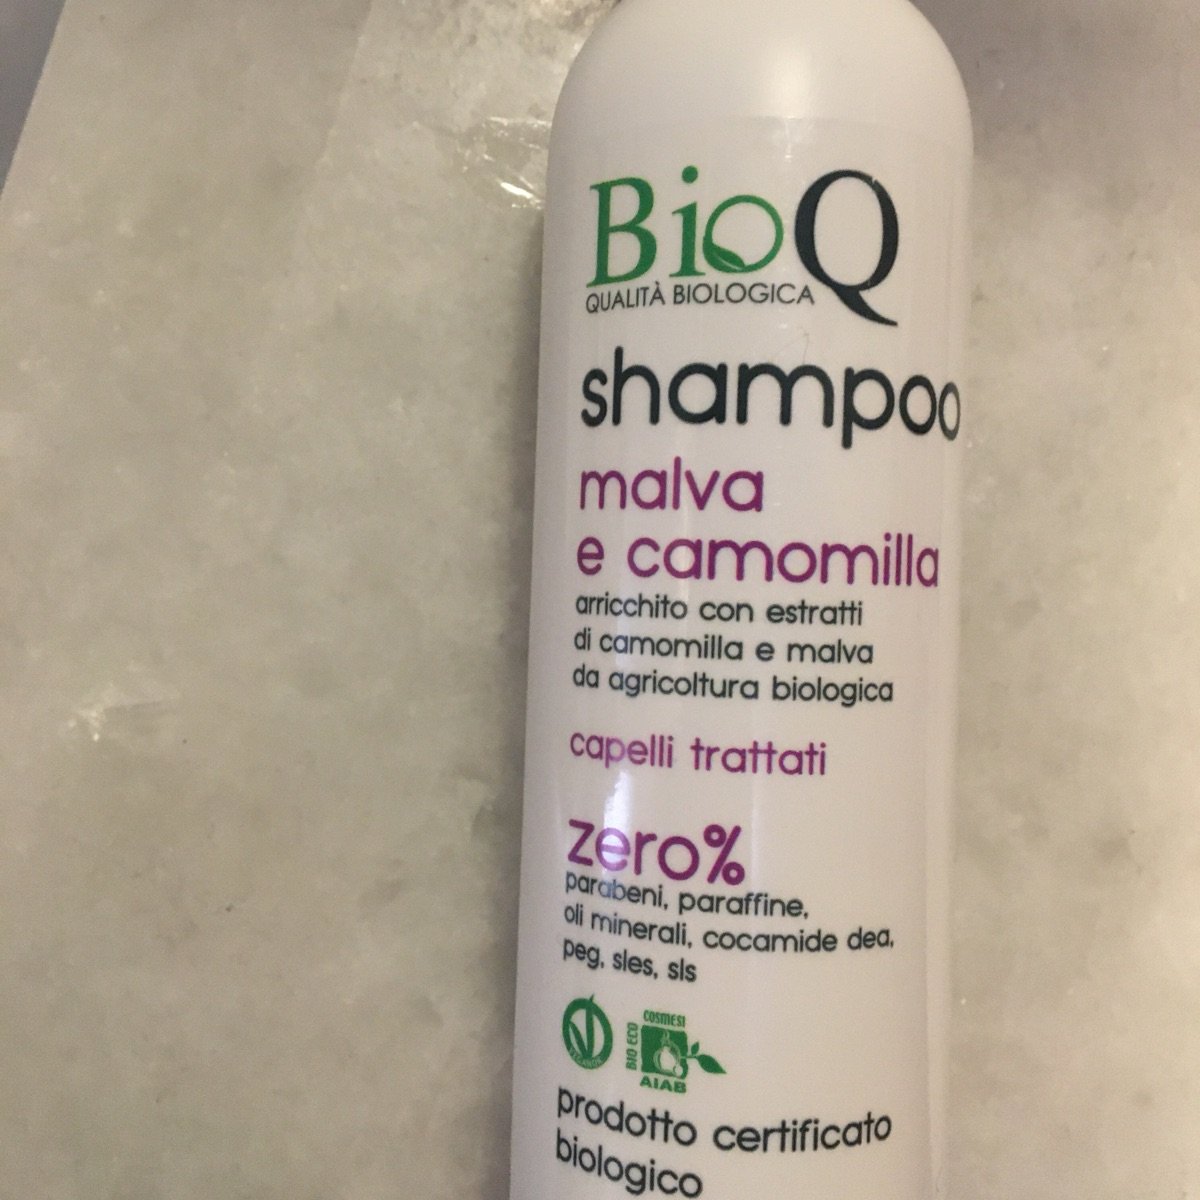 BioQ Shampoo malva e camomilla Review | abillion